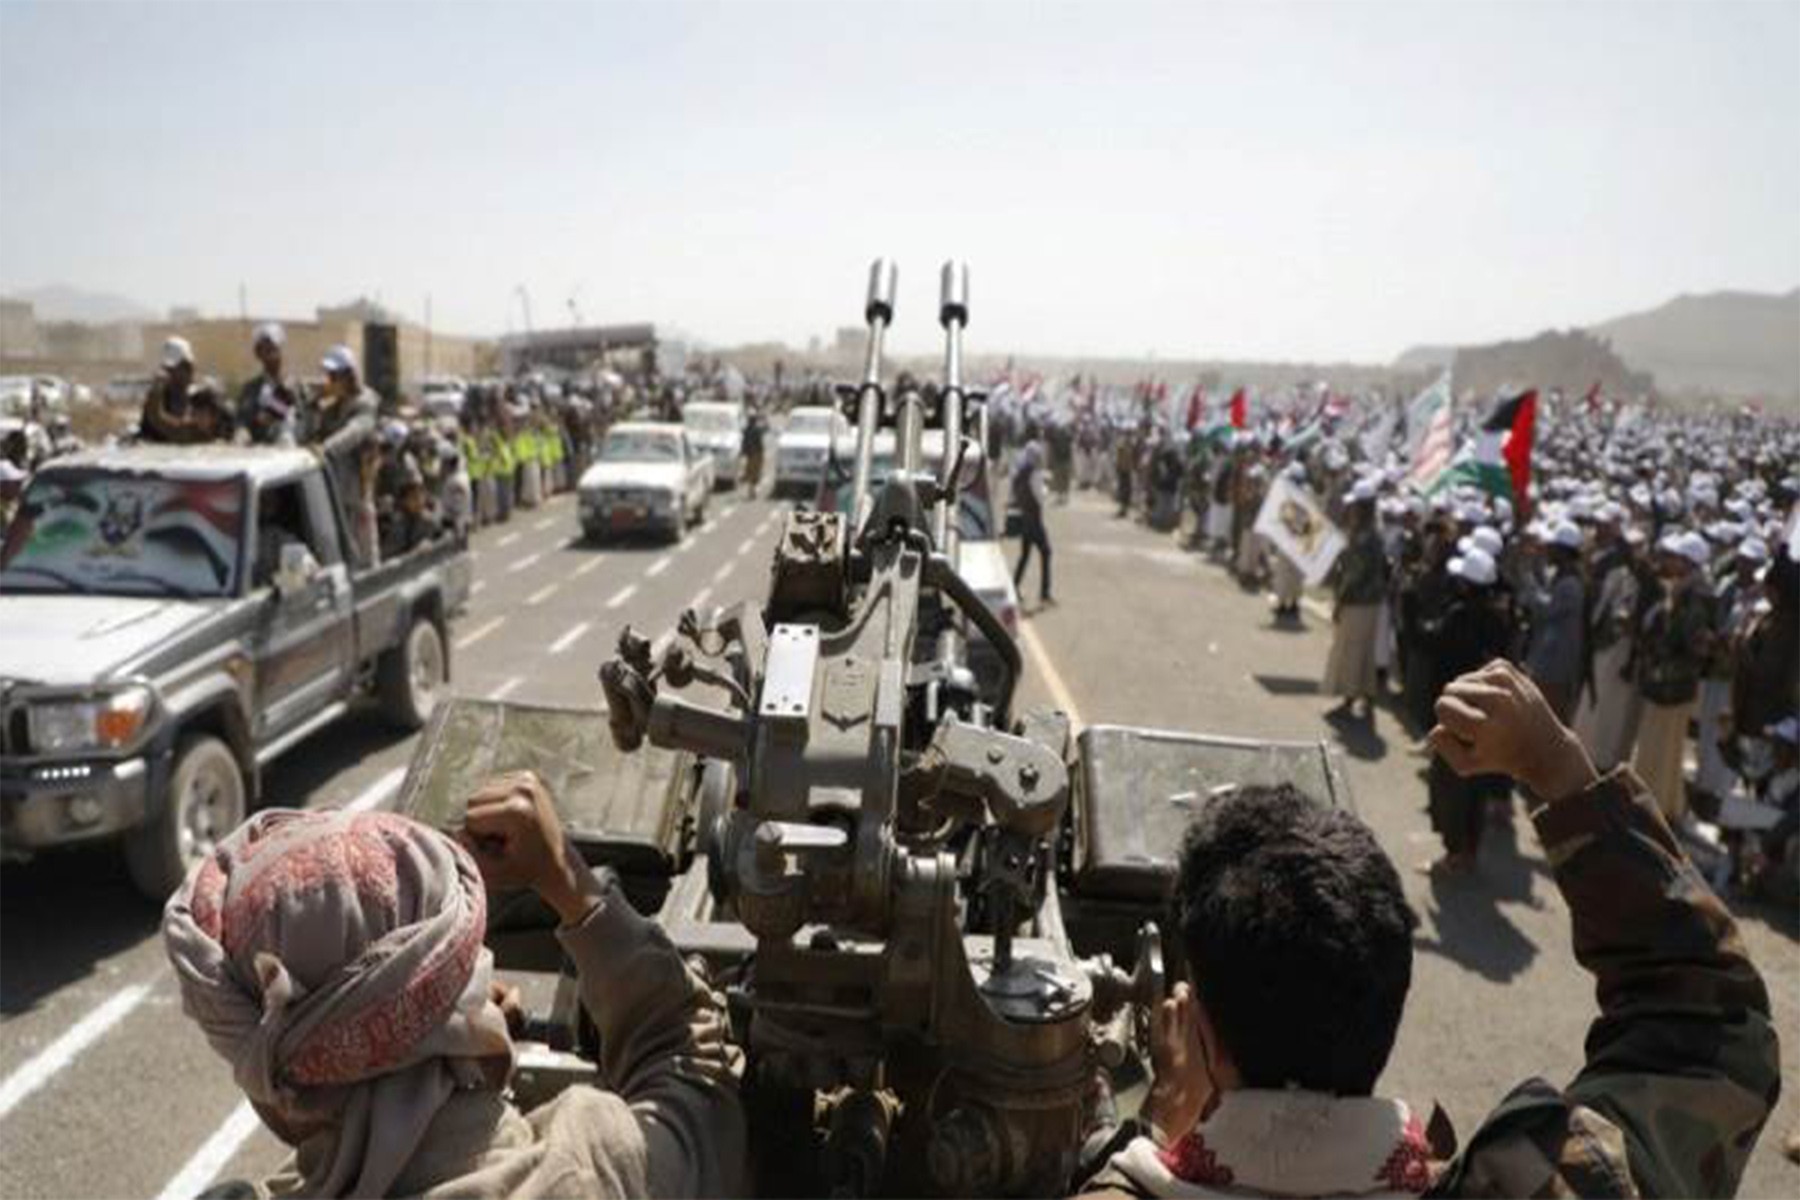 حوثی ها مدعی حمله مرگبار به کشتی تجاری در نزدیکی یمن شدند